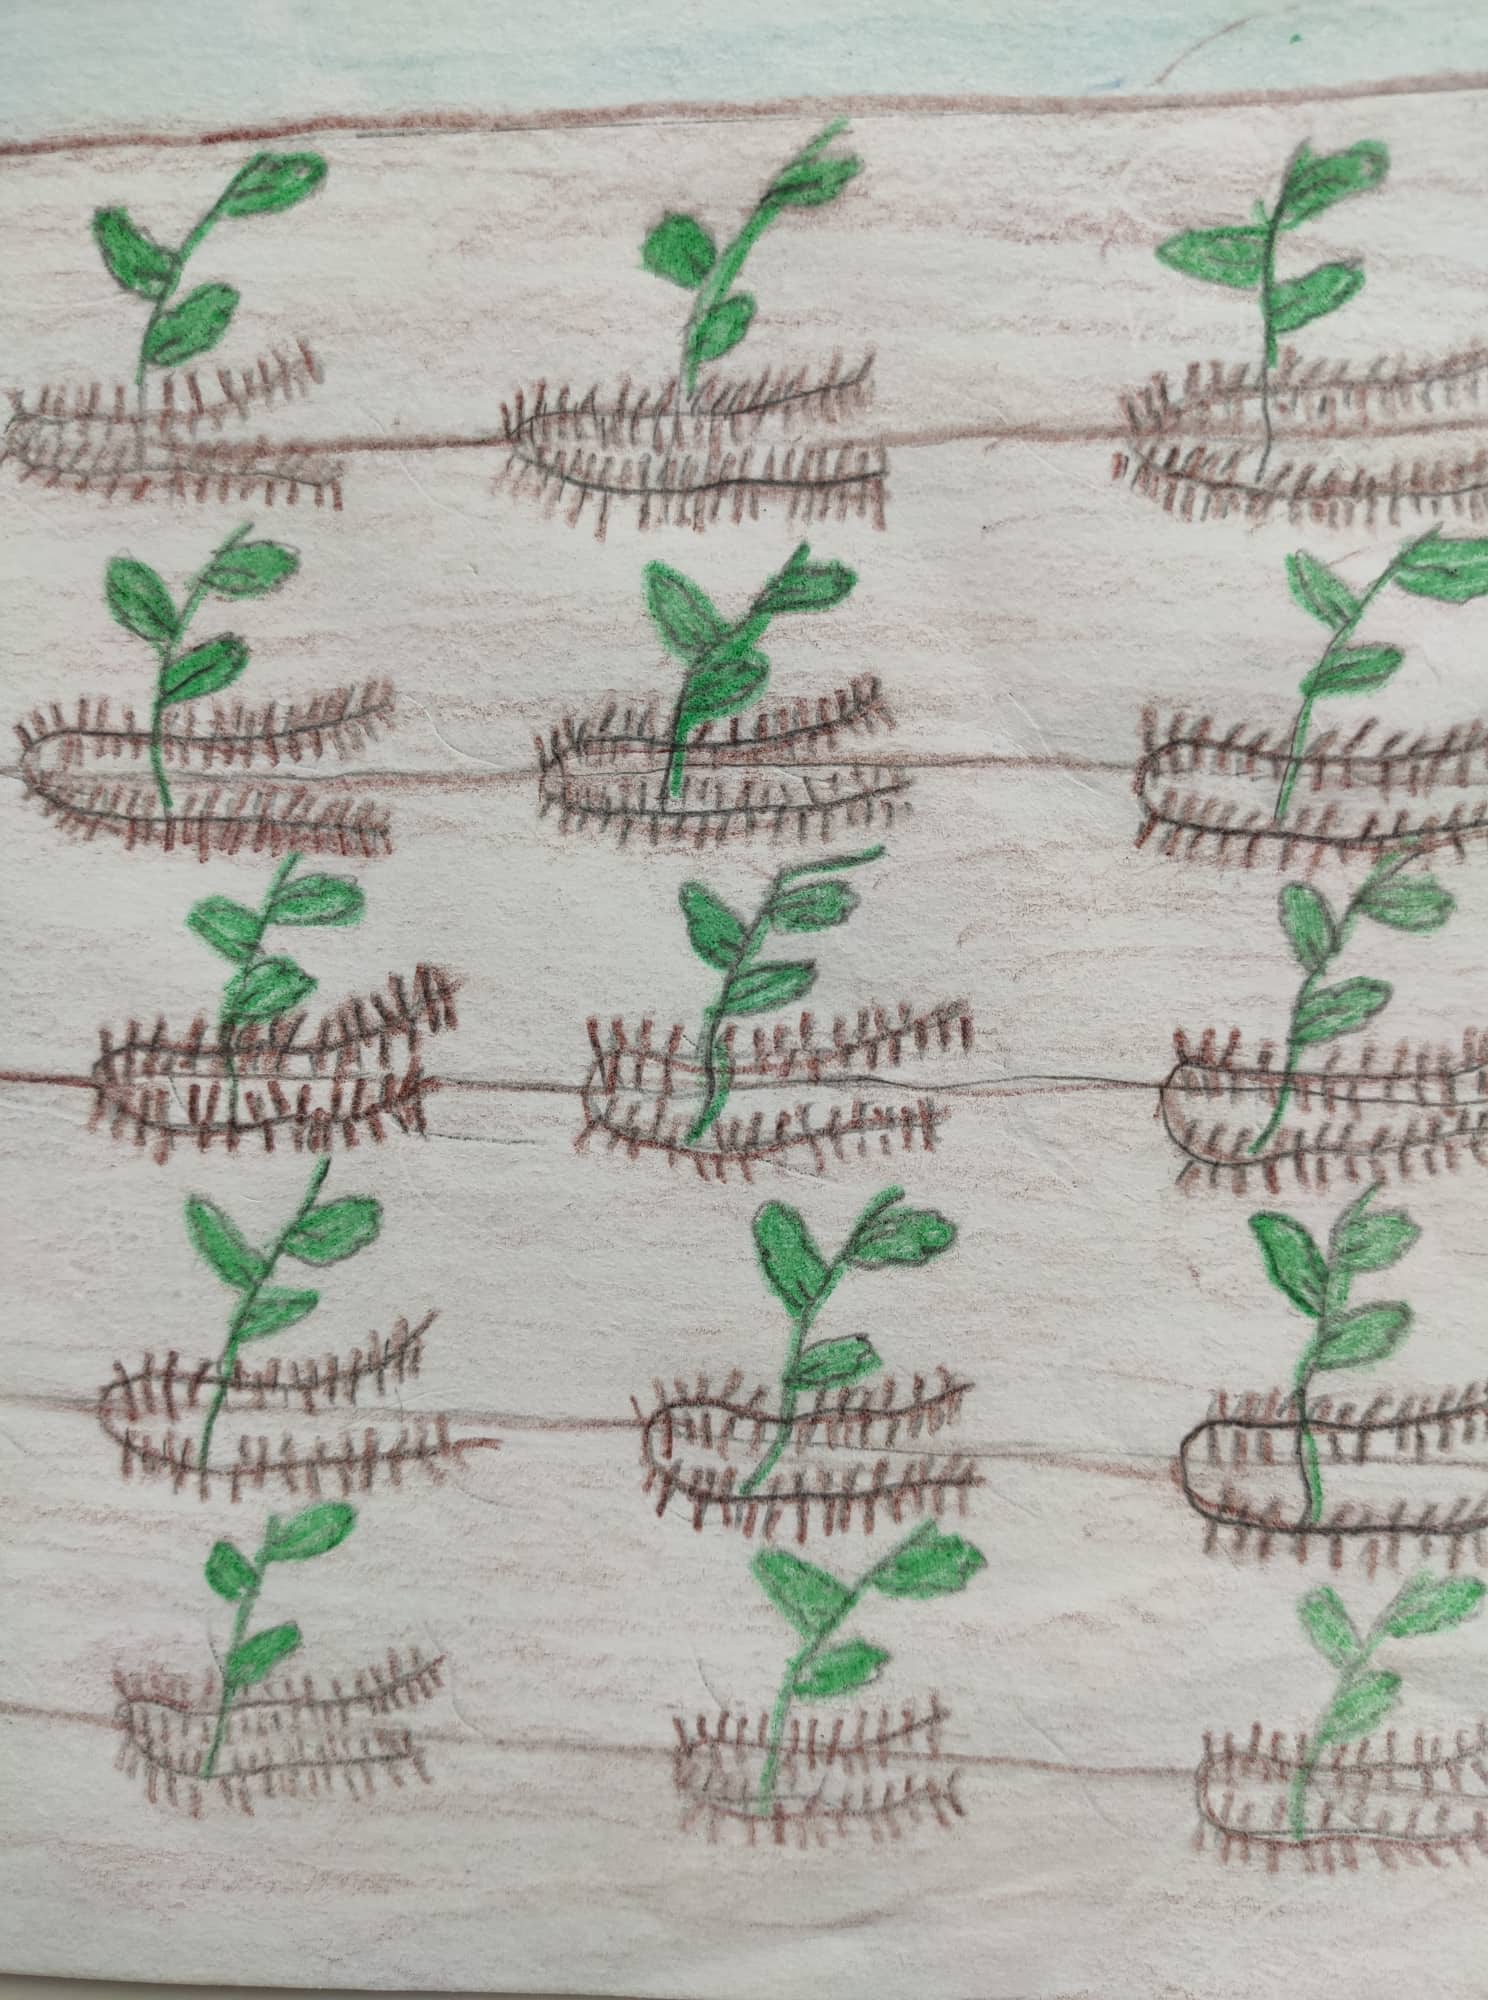 Segredos da Horta - Plantação de batata doce com recurso à fertilização natural  - Dicas e truques - Ilustração